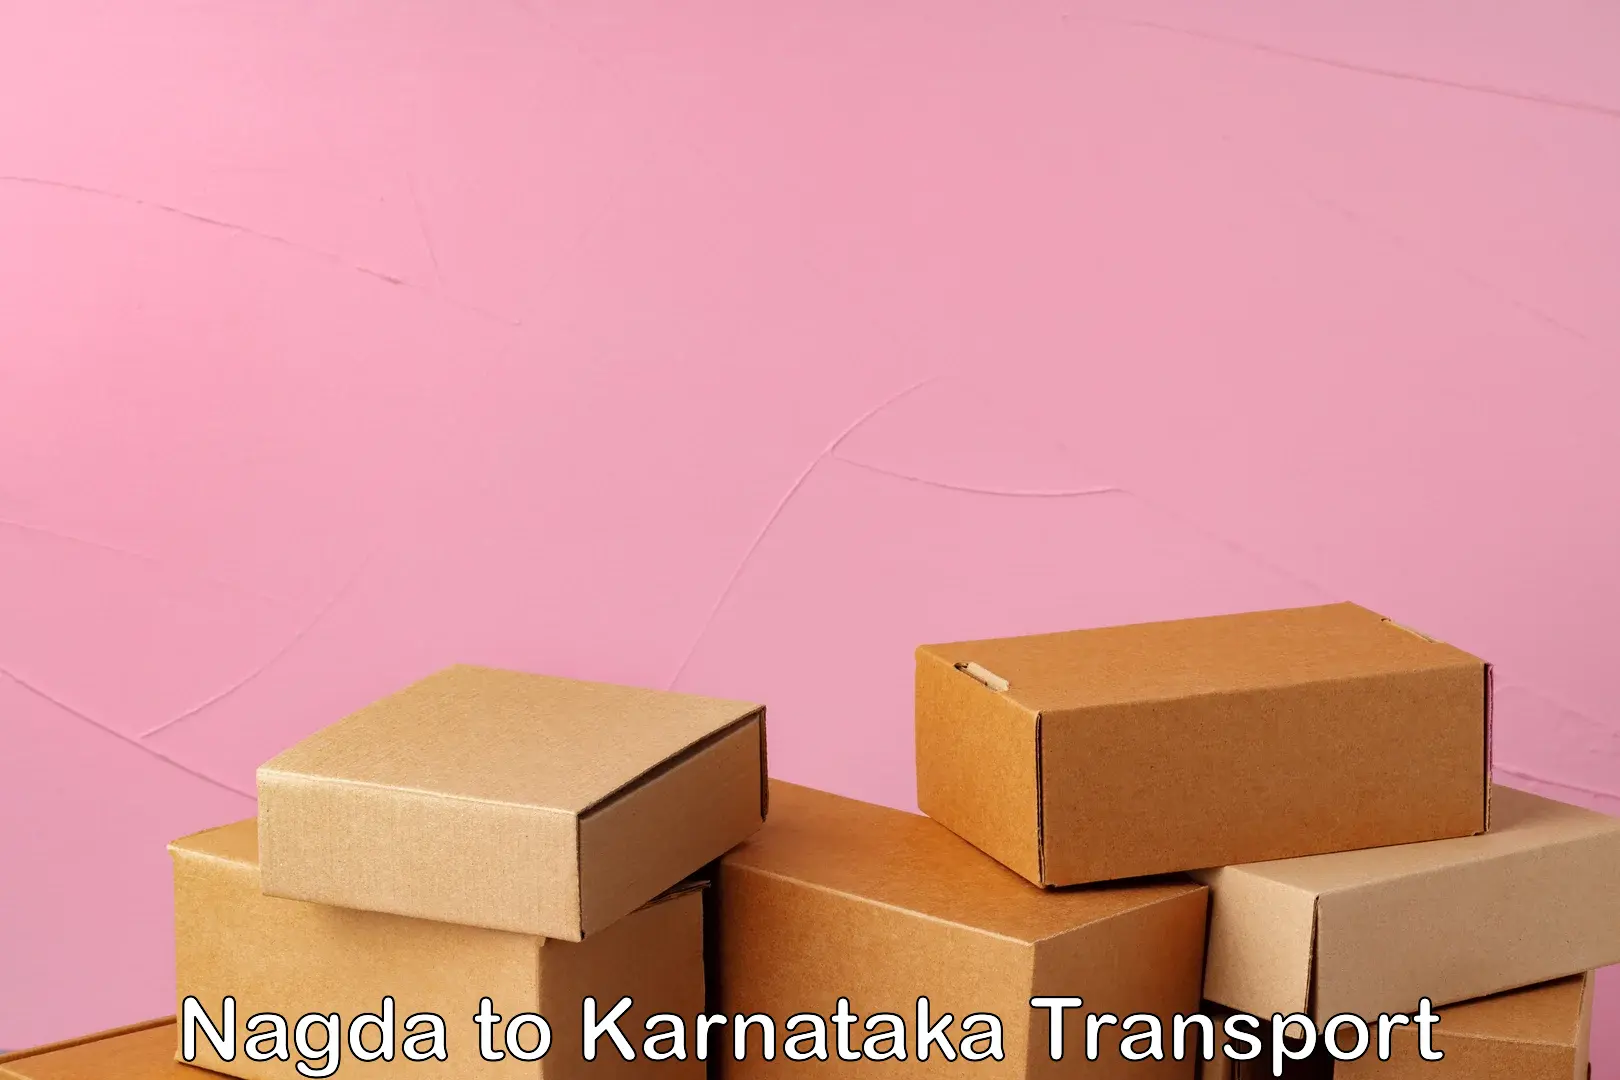 Intercity transport in Nagda to Karnataka